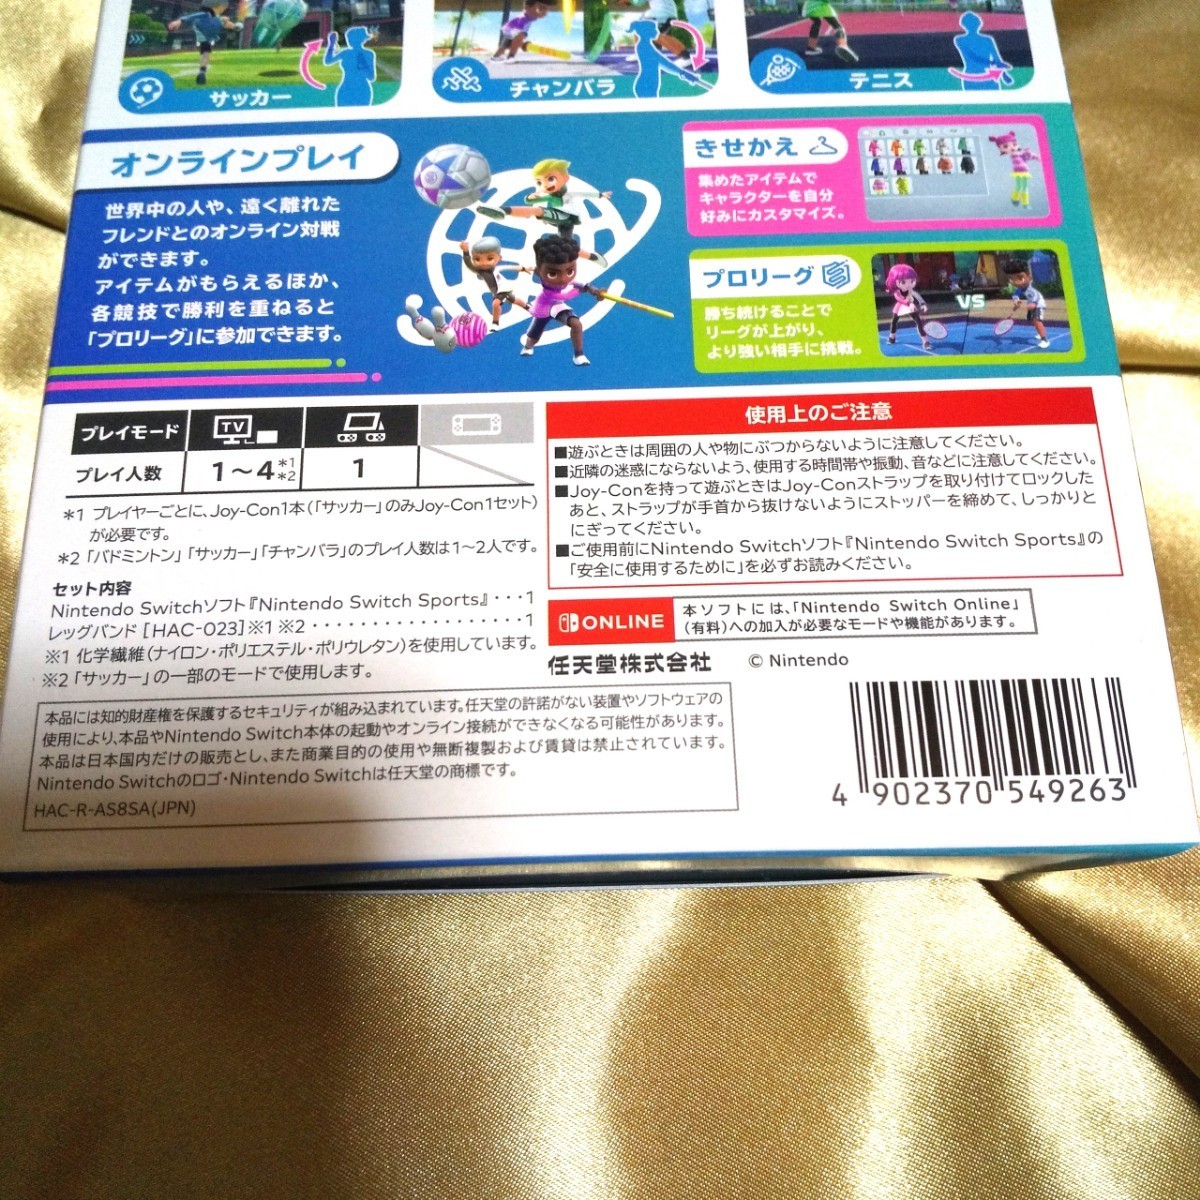  Nintendo Switch Sports【新品】★即購入OK★梱包済★24時間以内発送★